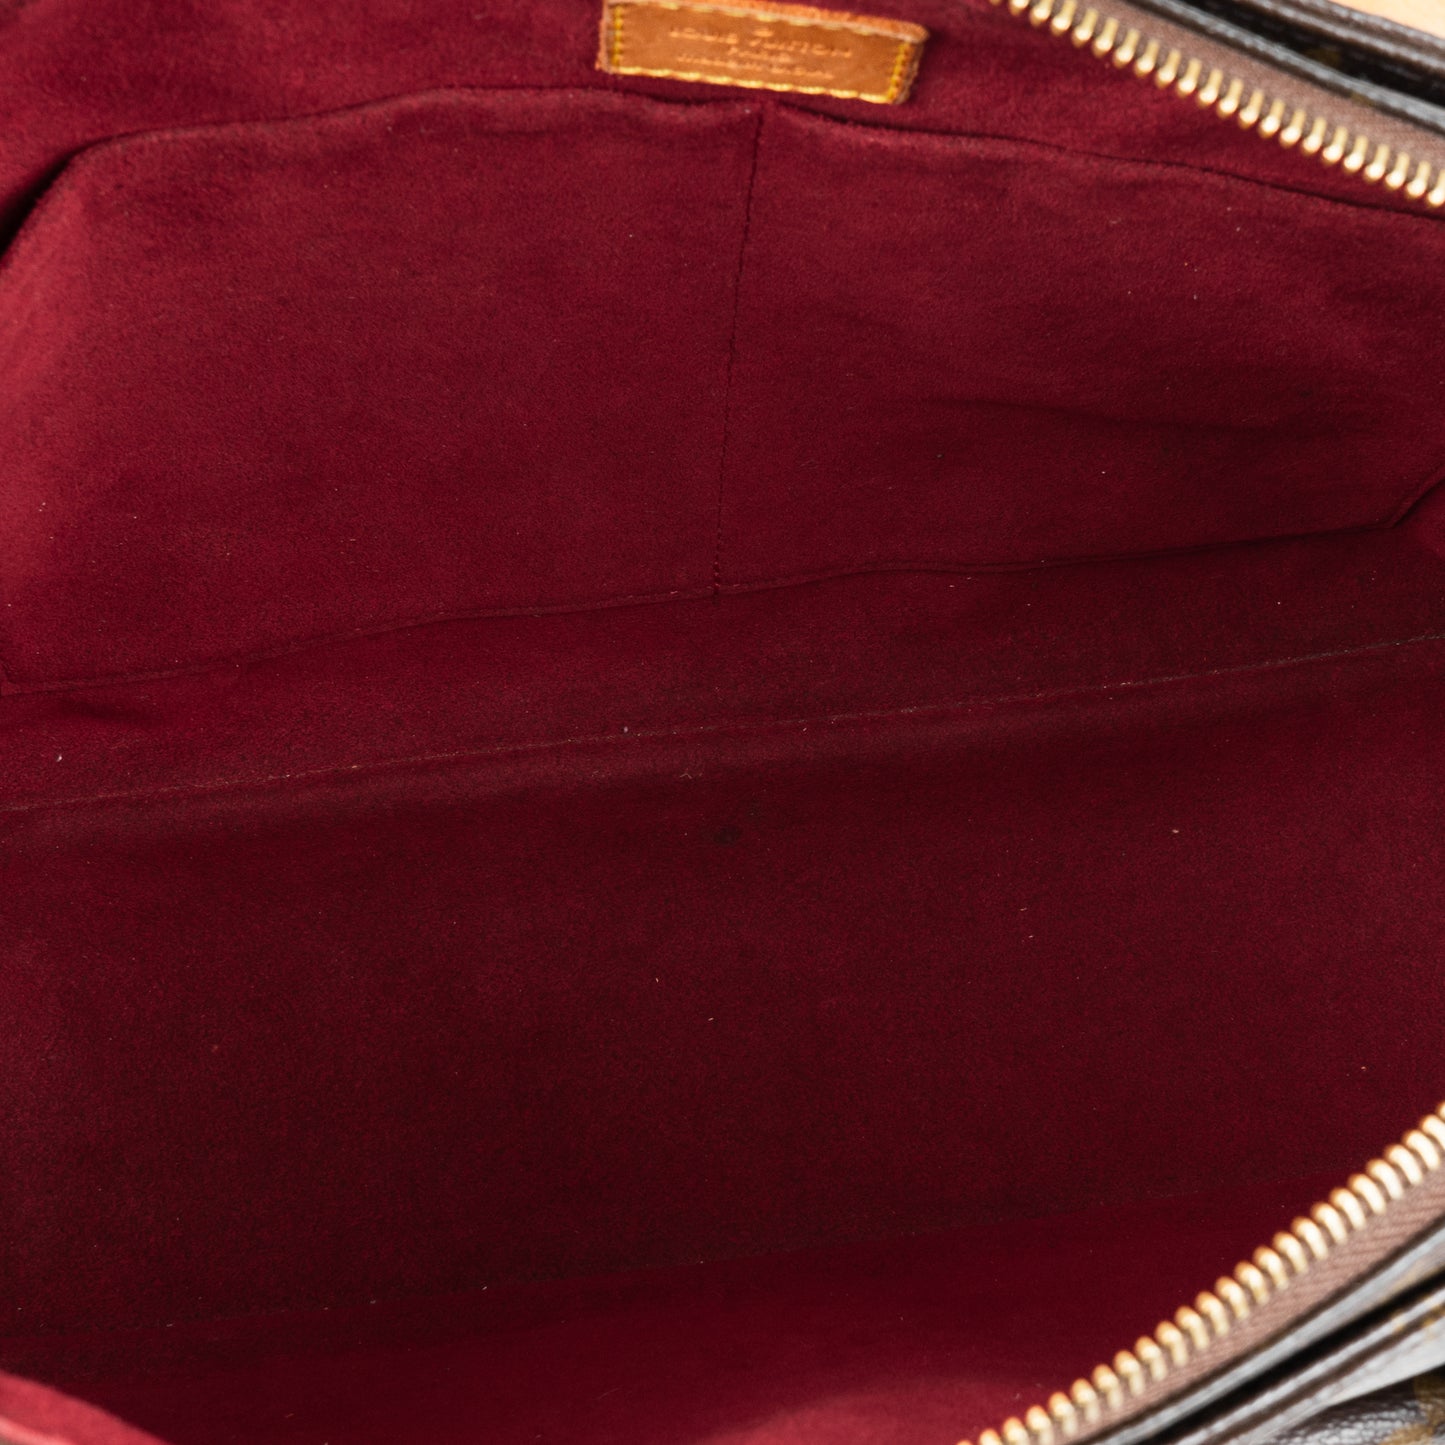 Louis Vuitton Canvas Monogram Viva Cite Shoulder Bag